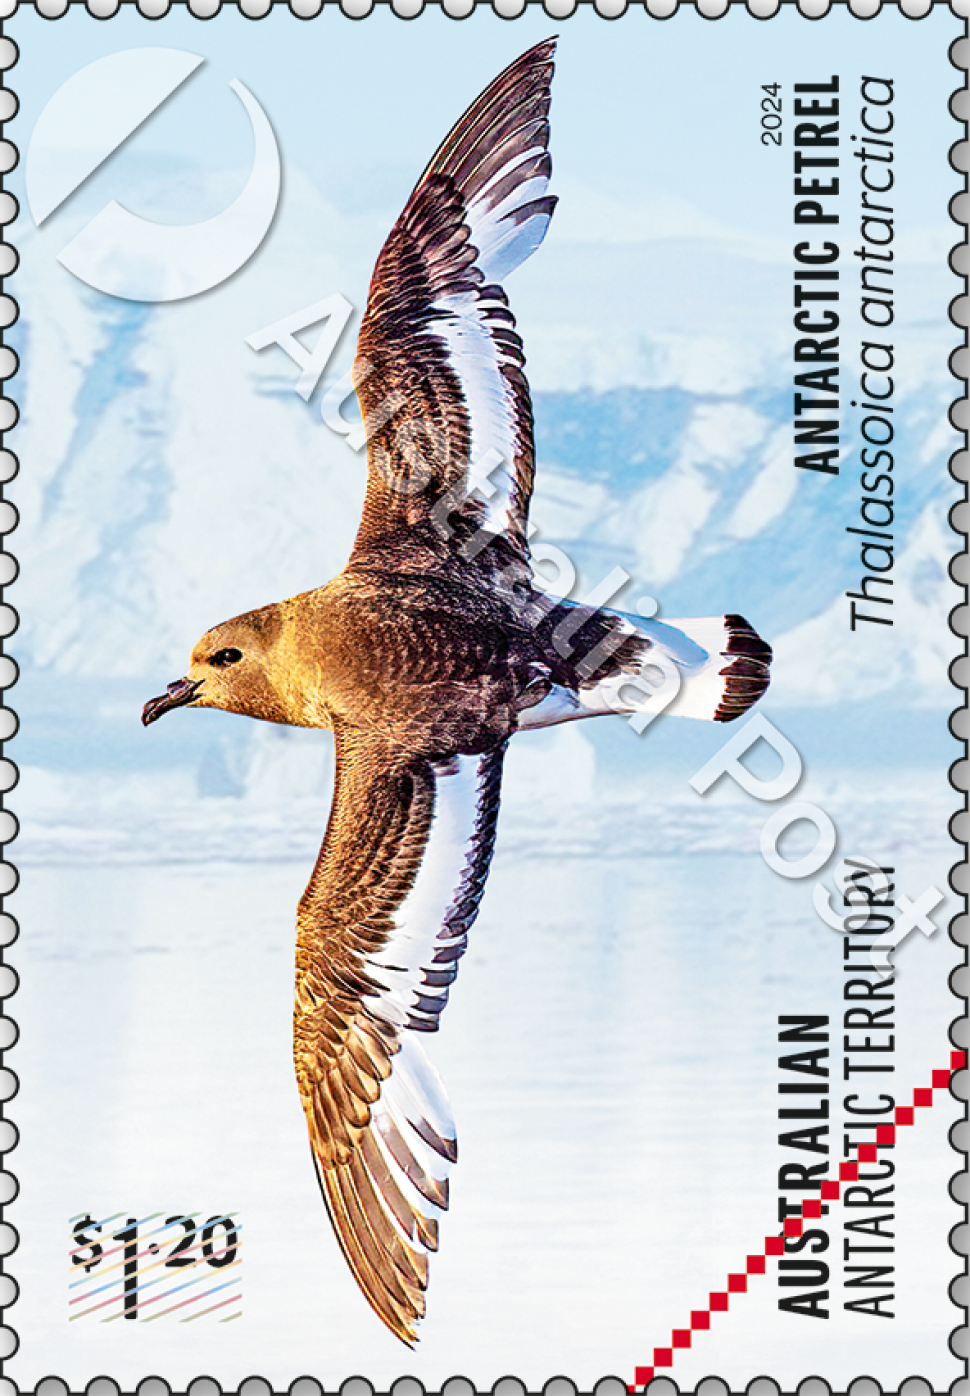 $1.20 Antarctic Petrel, Thalassoica antarctica stamp